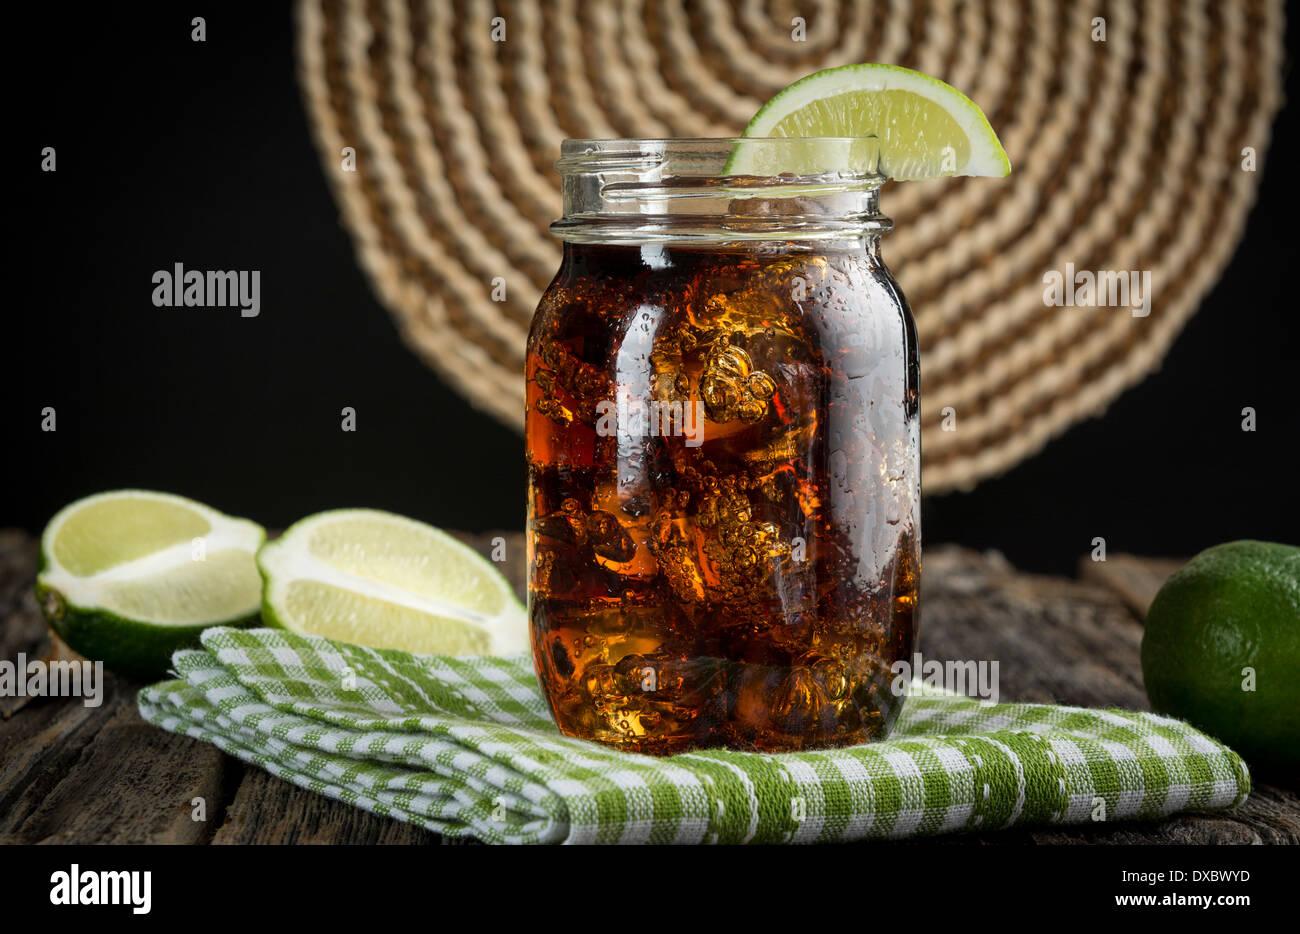 Cuba Libre oder Rum und Cola-Getränk mit Eis und Kalk im Einmachglas Stockfoto